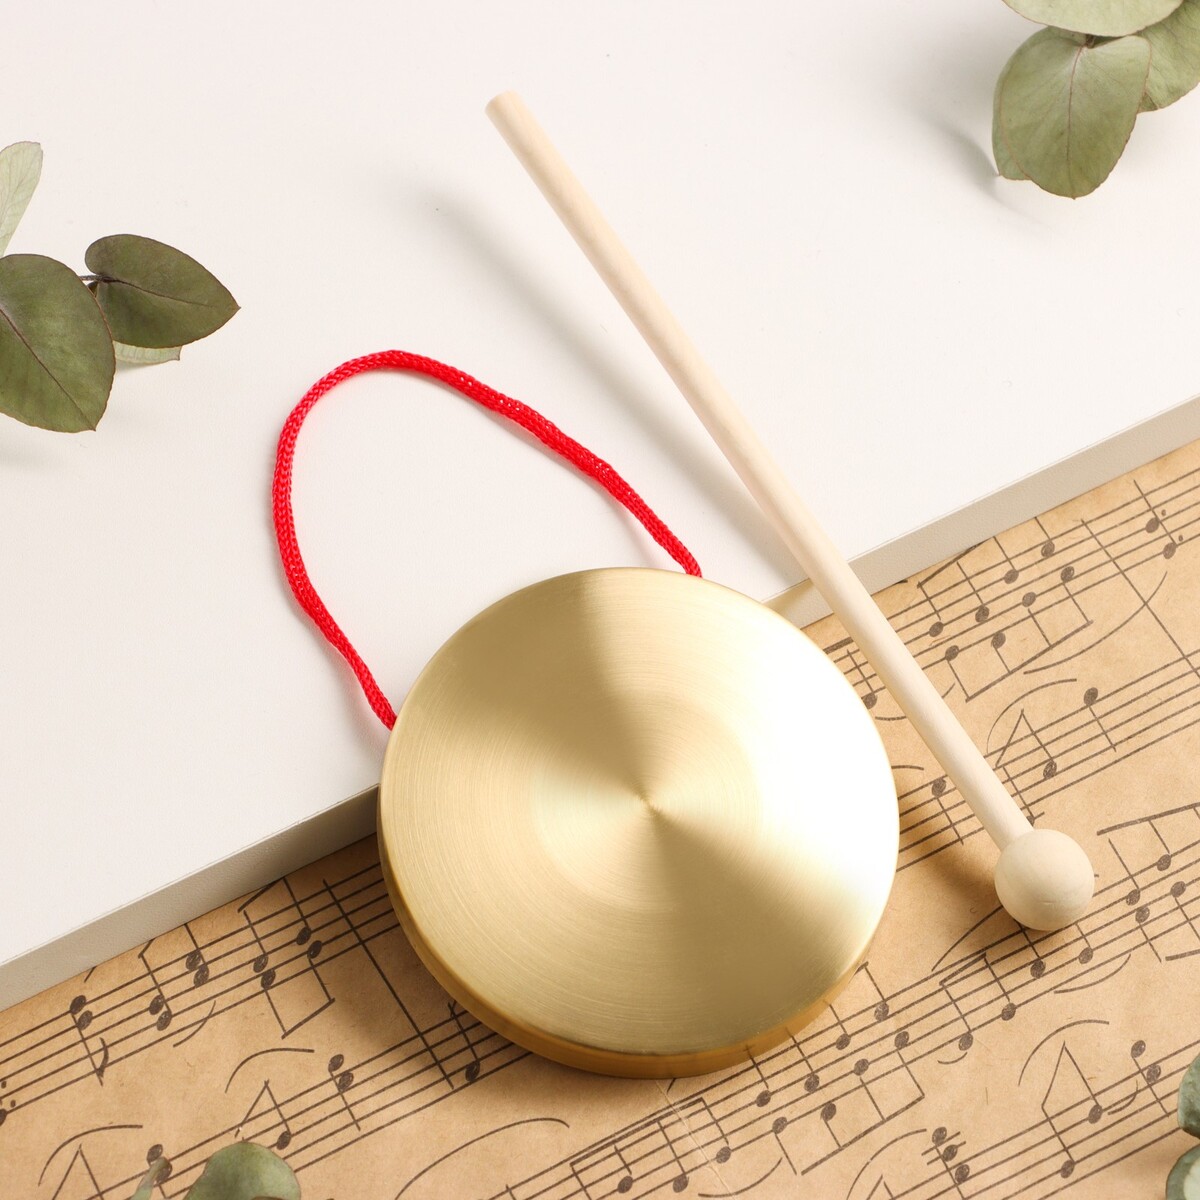 Музыкальный инструмент гонг music life 9 см, колотушка в комплекте музыкальный инструмент гуиро music life деревянный одноручный